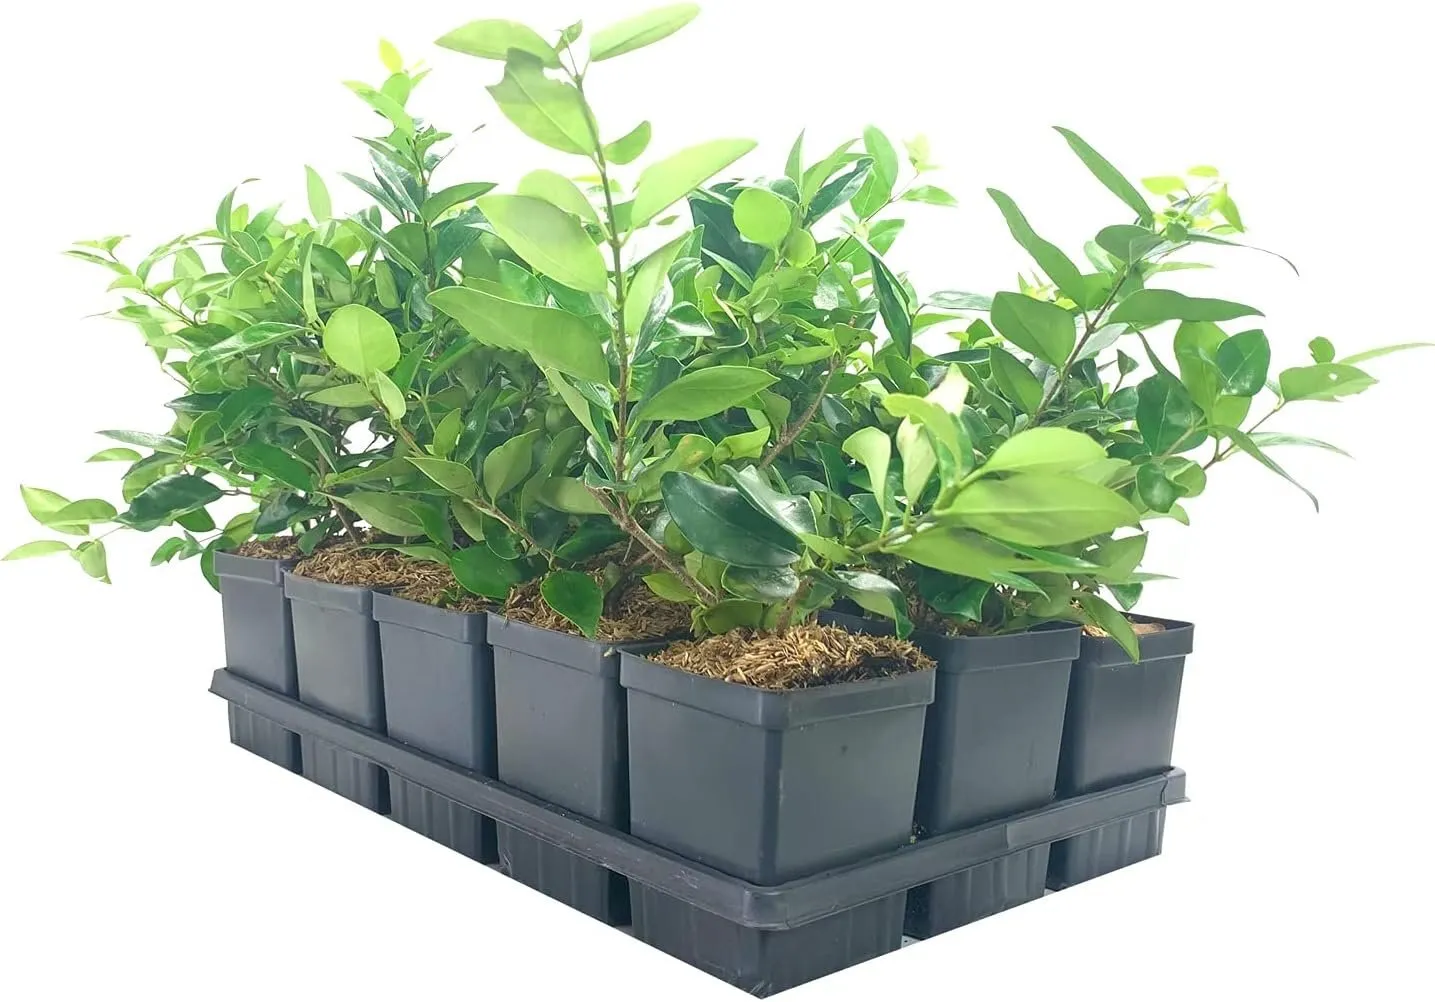 Ligustrum Waxleaf Privet Live Quart Size Plant Blooming Privacy - $40.77